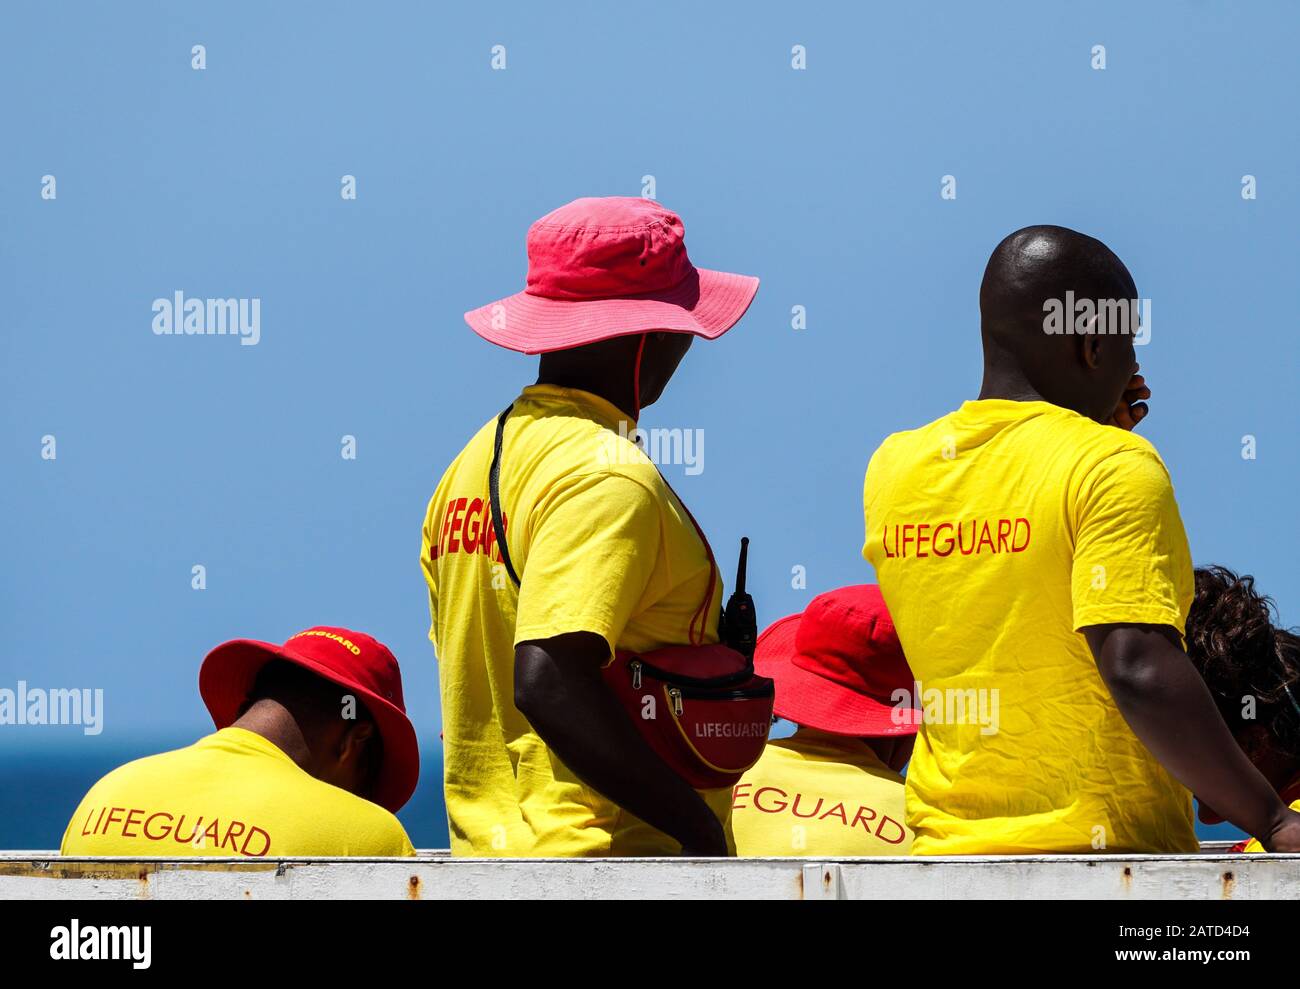 Rettungsschwimmer, Rettungsschwimmer, die in der Pflicht sind, tragen gelbe und rote Uniform an ihrem Turm am Muizenberg Strand, Kap-Halbinsel, Südafrika Konzept der öffentlichen Sicherheit Stockfoto